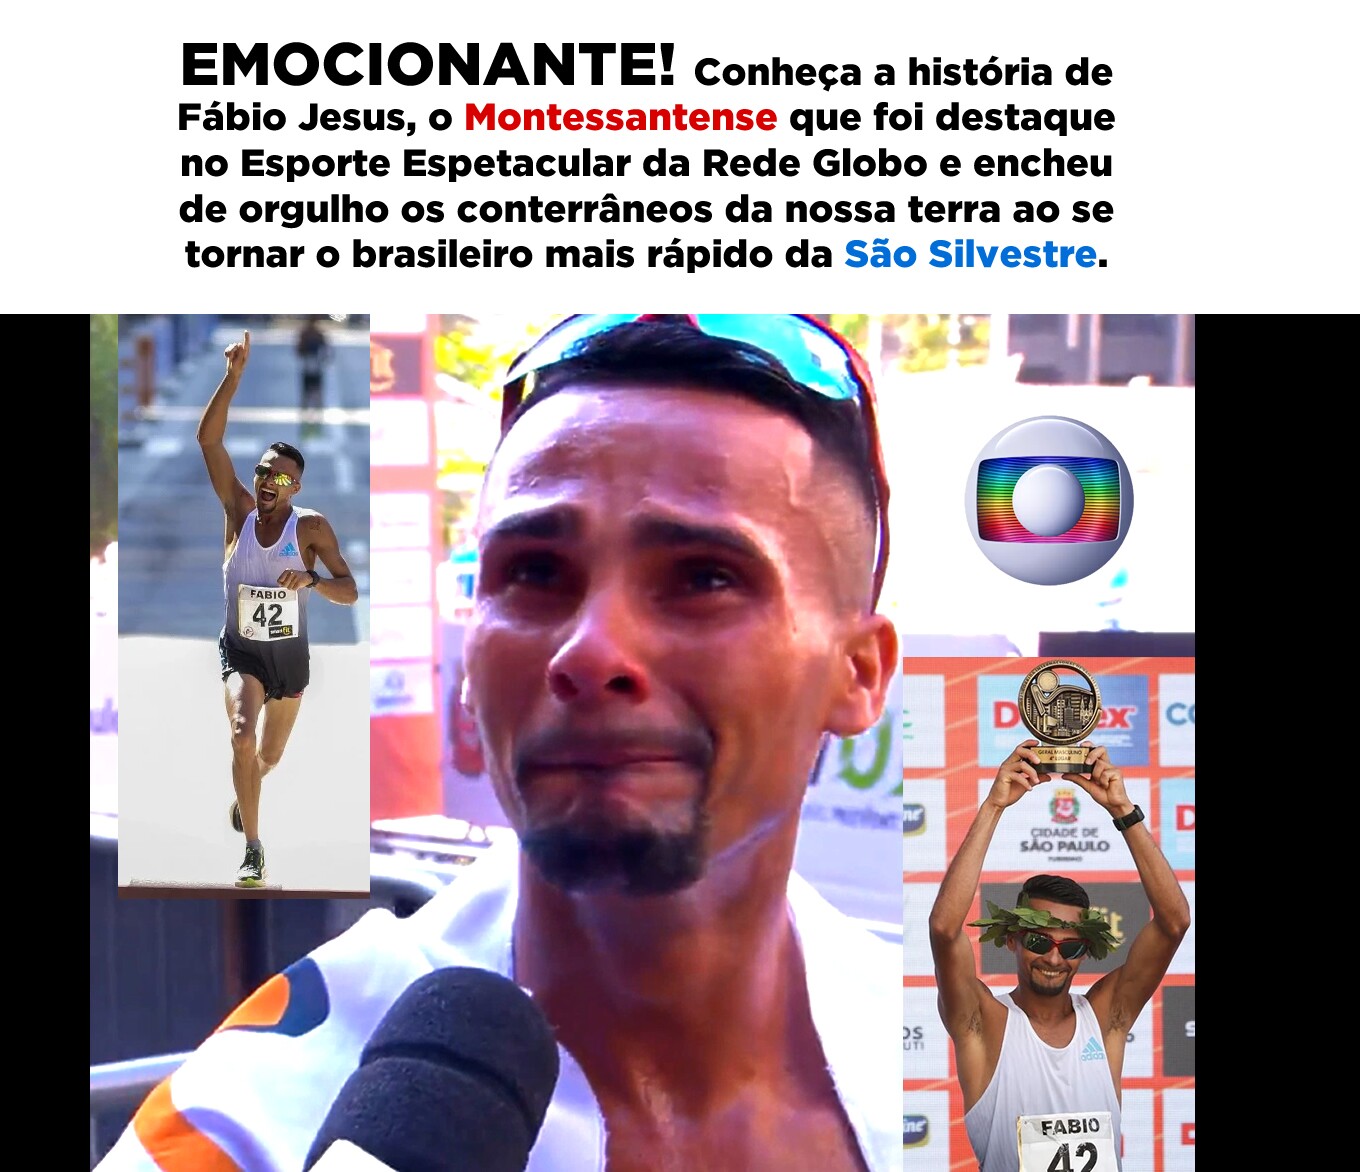 😀🙏 EMOCIONANTE! Conheça a história de Fábio Jesus, o Montessantense que foi destaque no Esporte Espetacular da Rede Globo